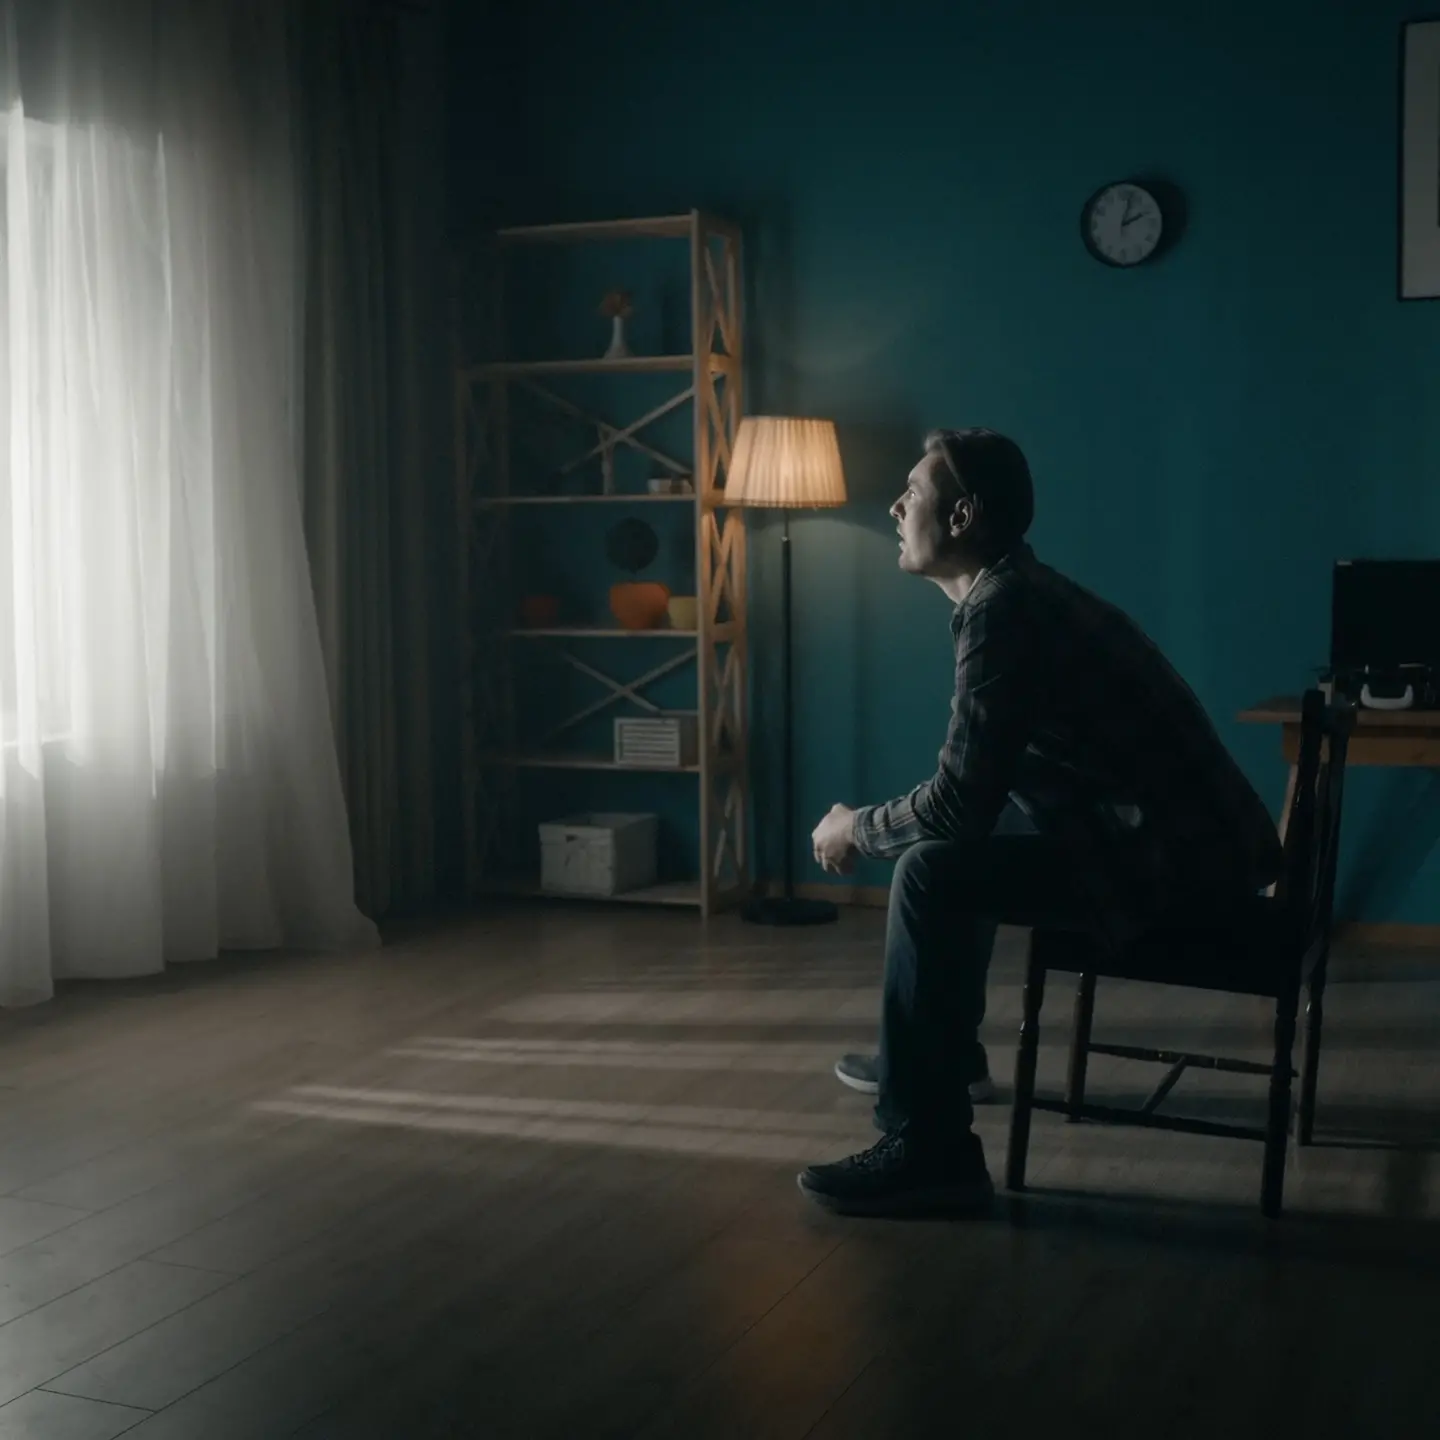 Zu sehen ist ein einsamer Mann, der in einem dunklen Zimmer sitzt und zum gardinenverhangenen Fenster sieht